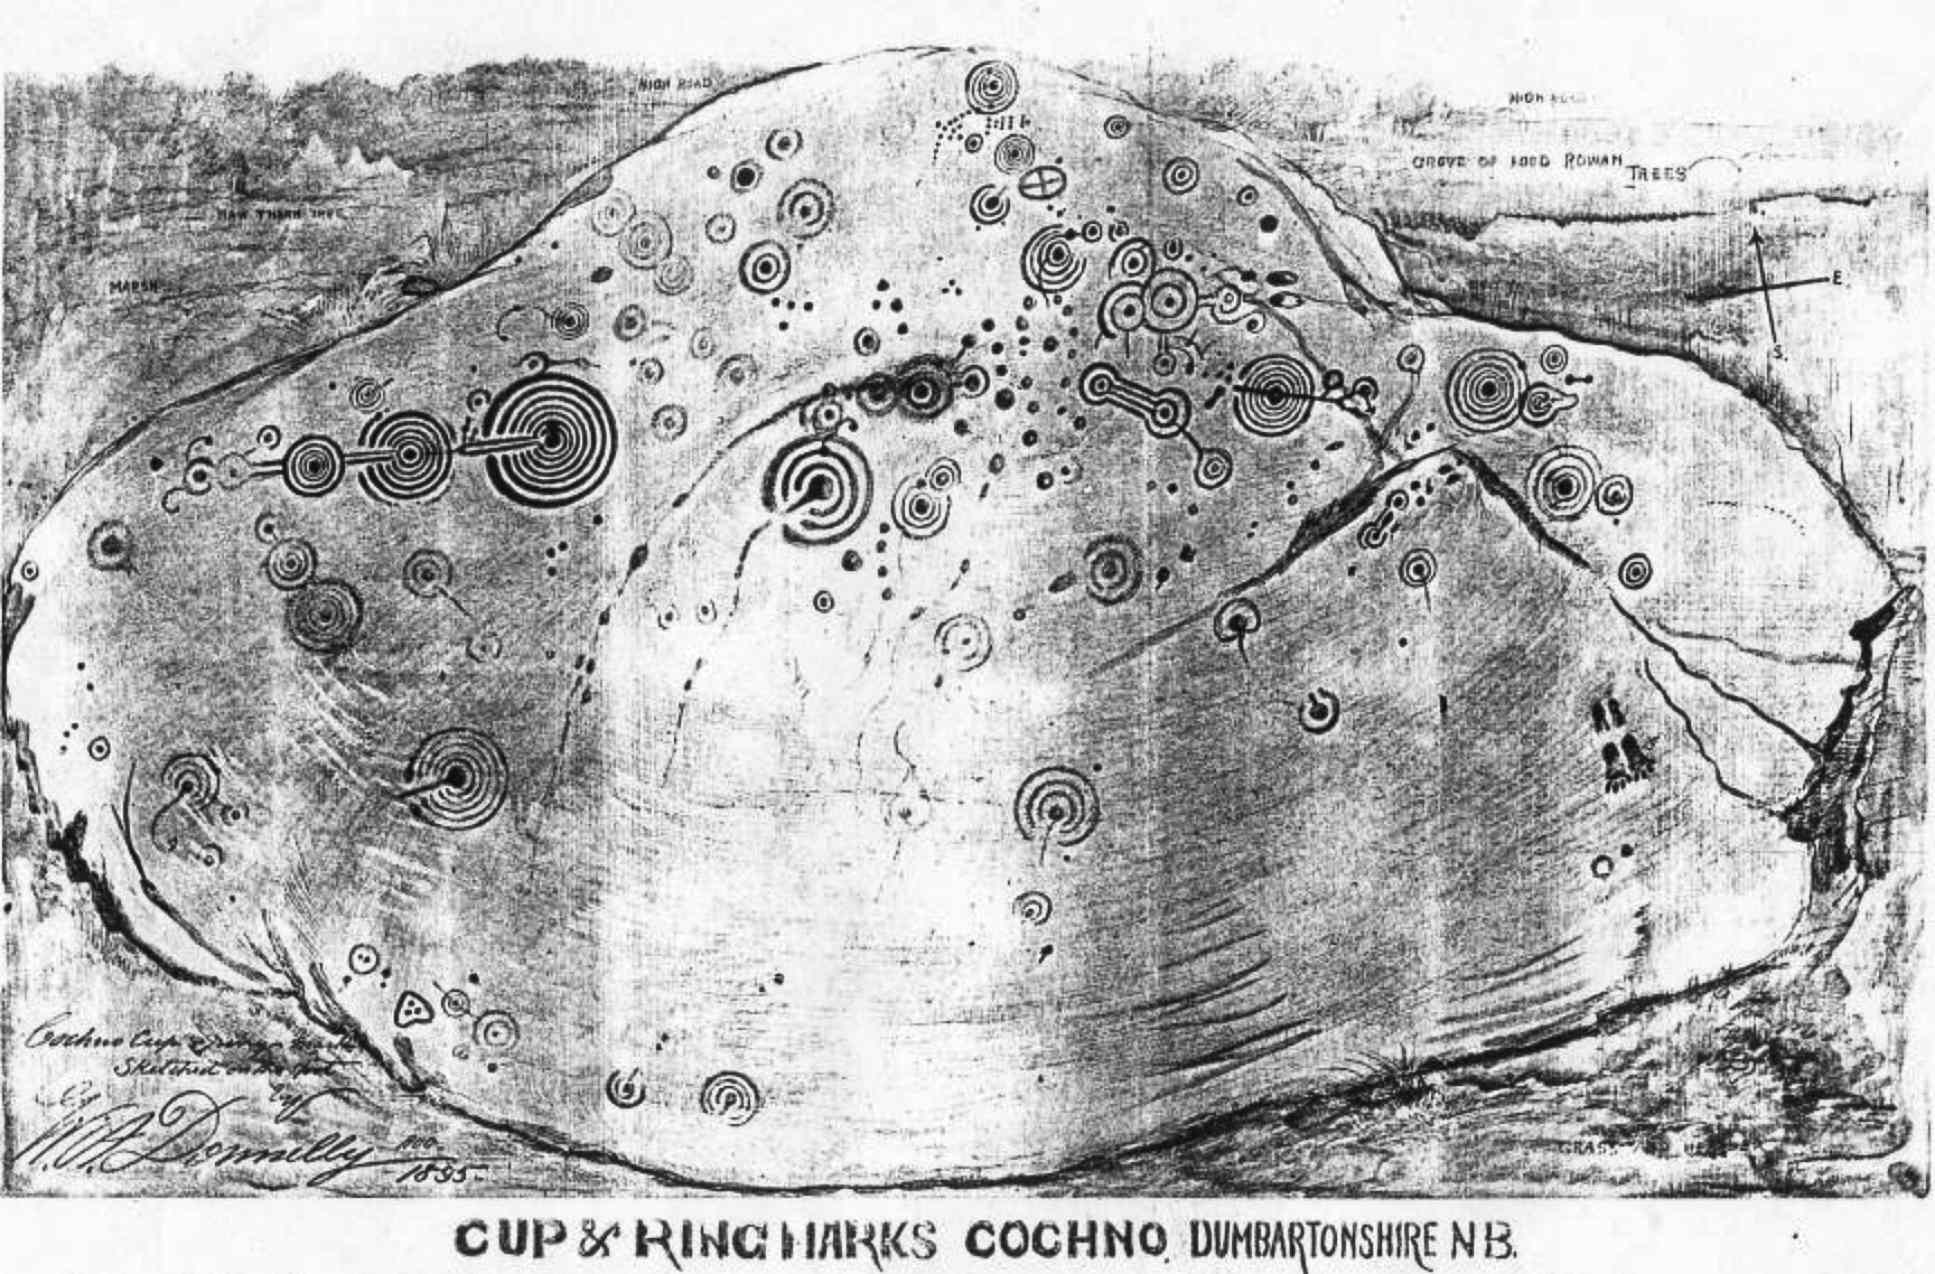 WA Donnelly 于 1895 年绘制的 Cochno Stone 素描